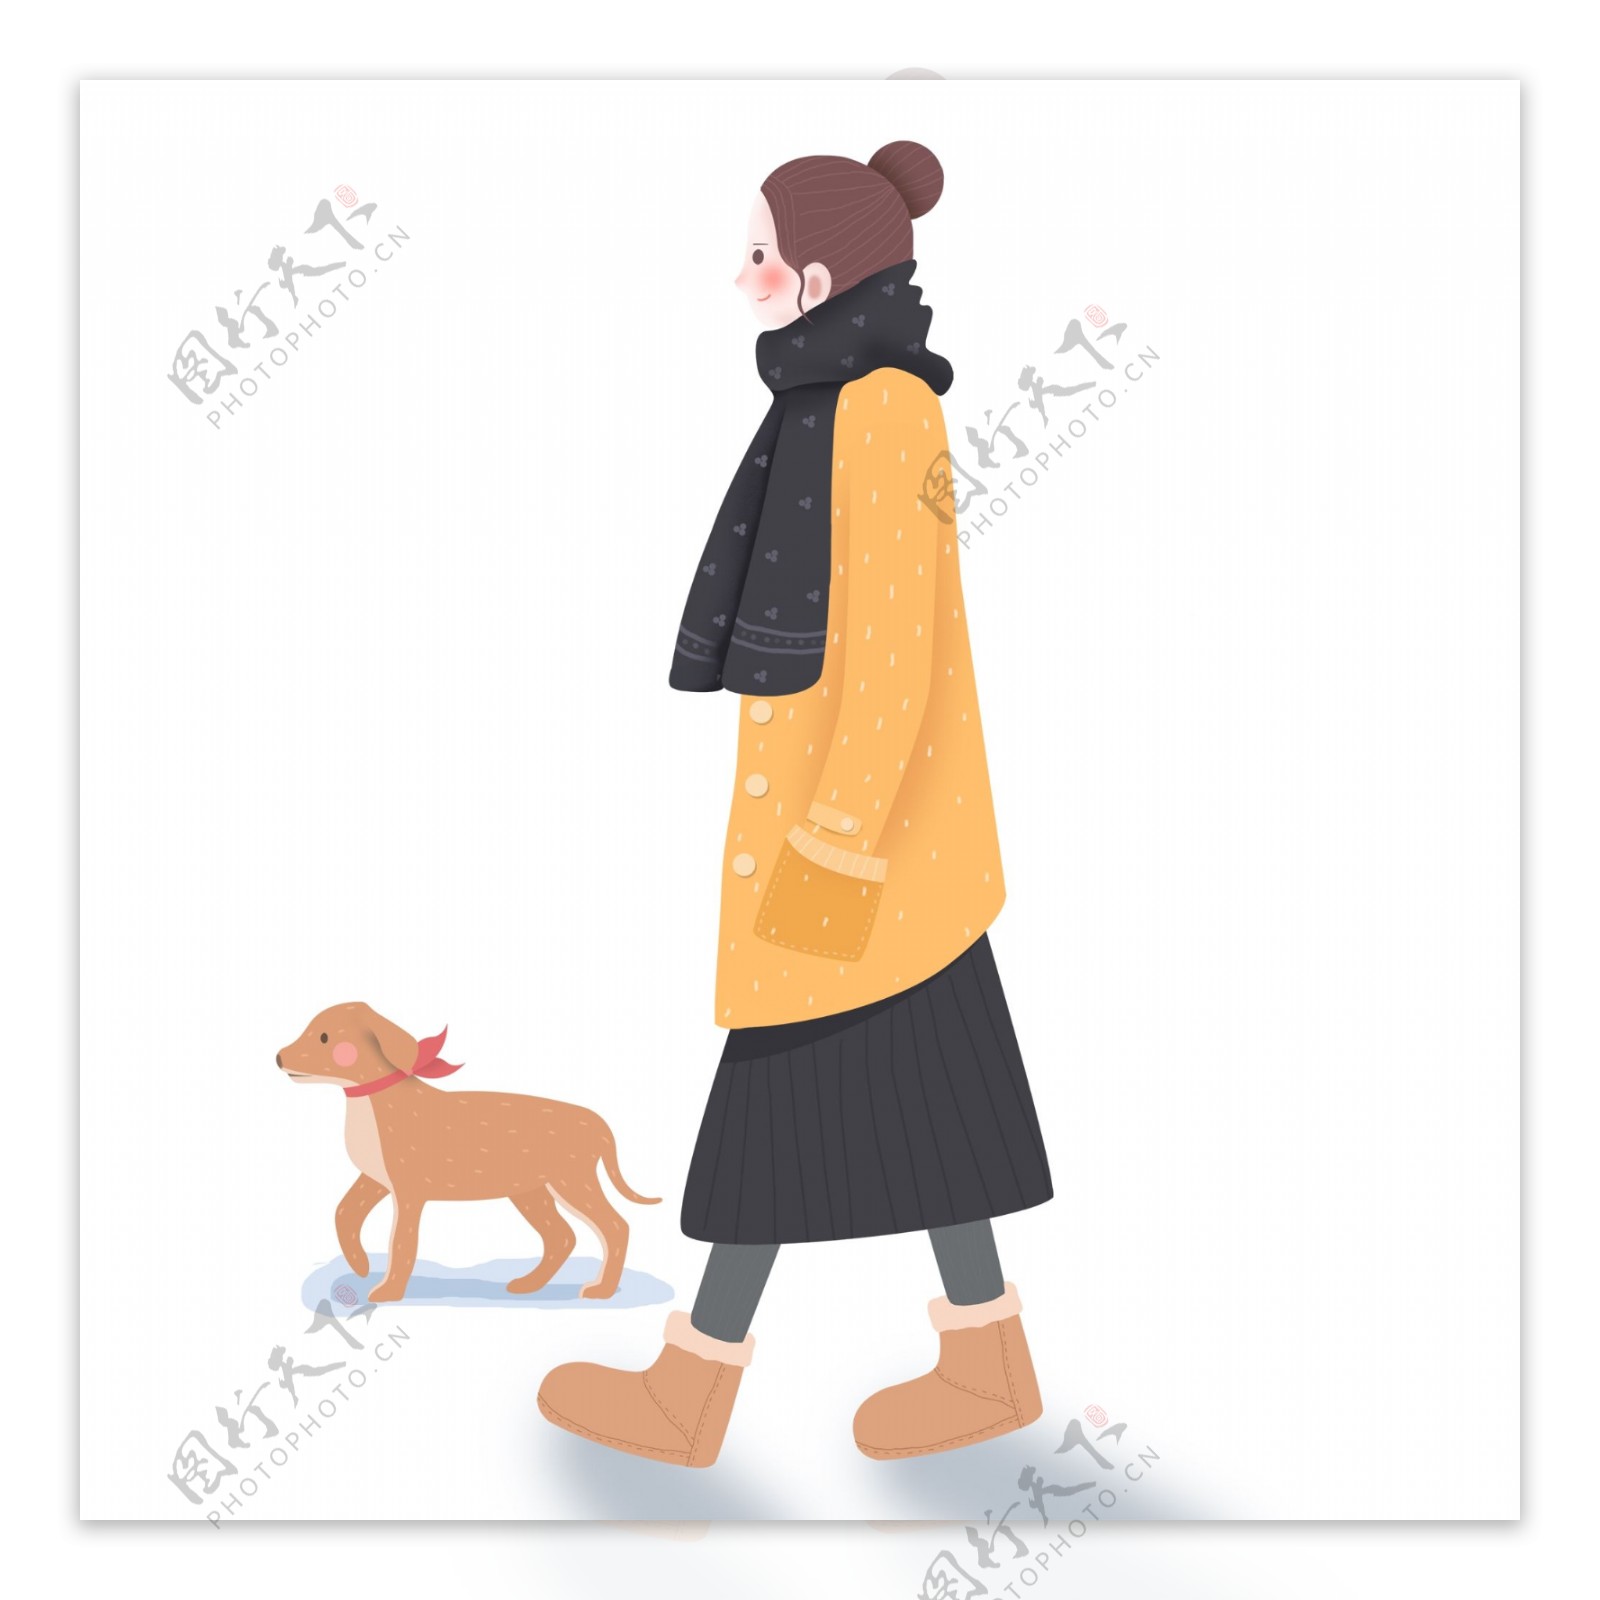 冬季女孩和小狗散步